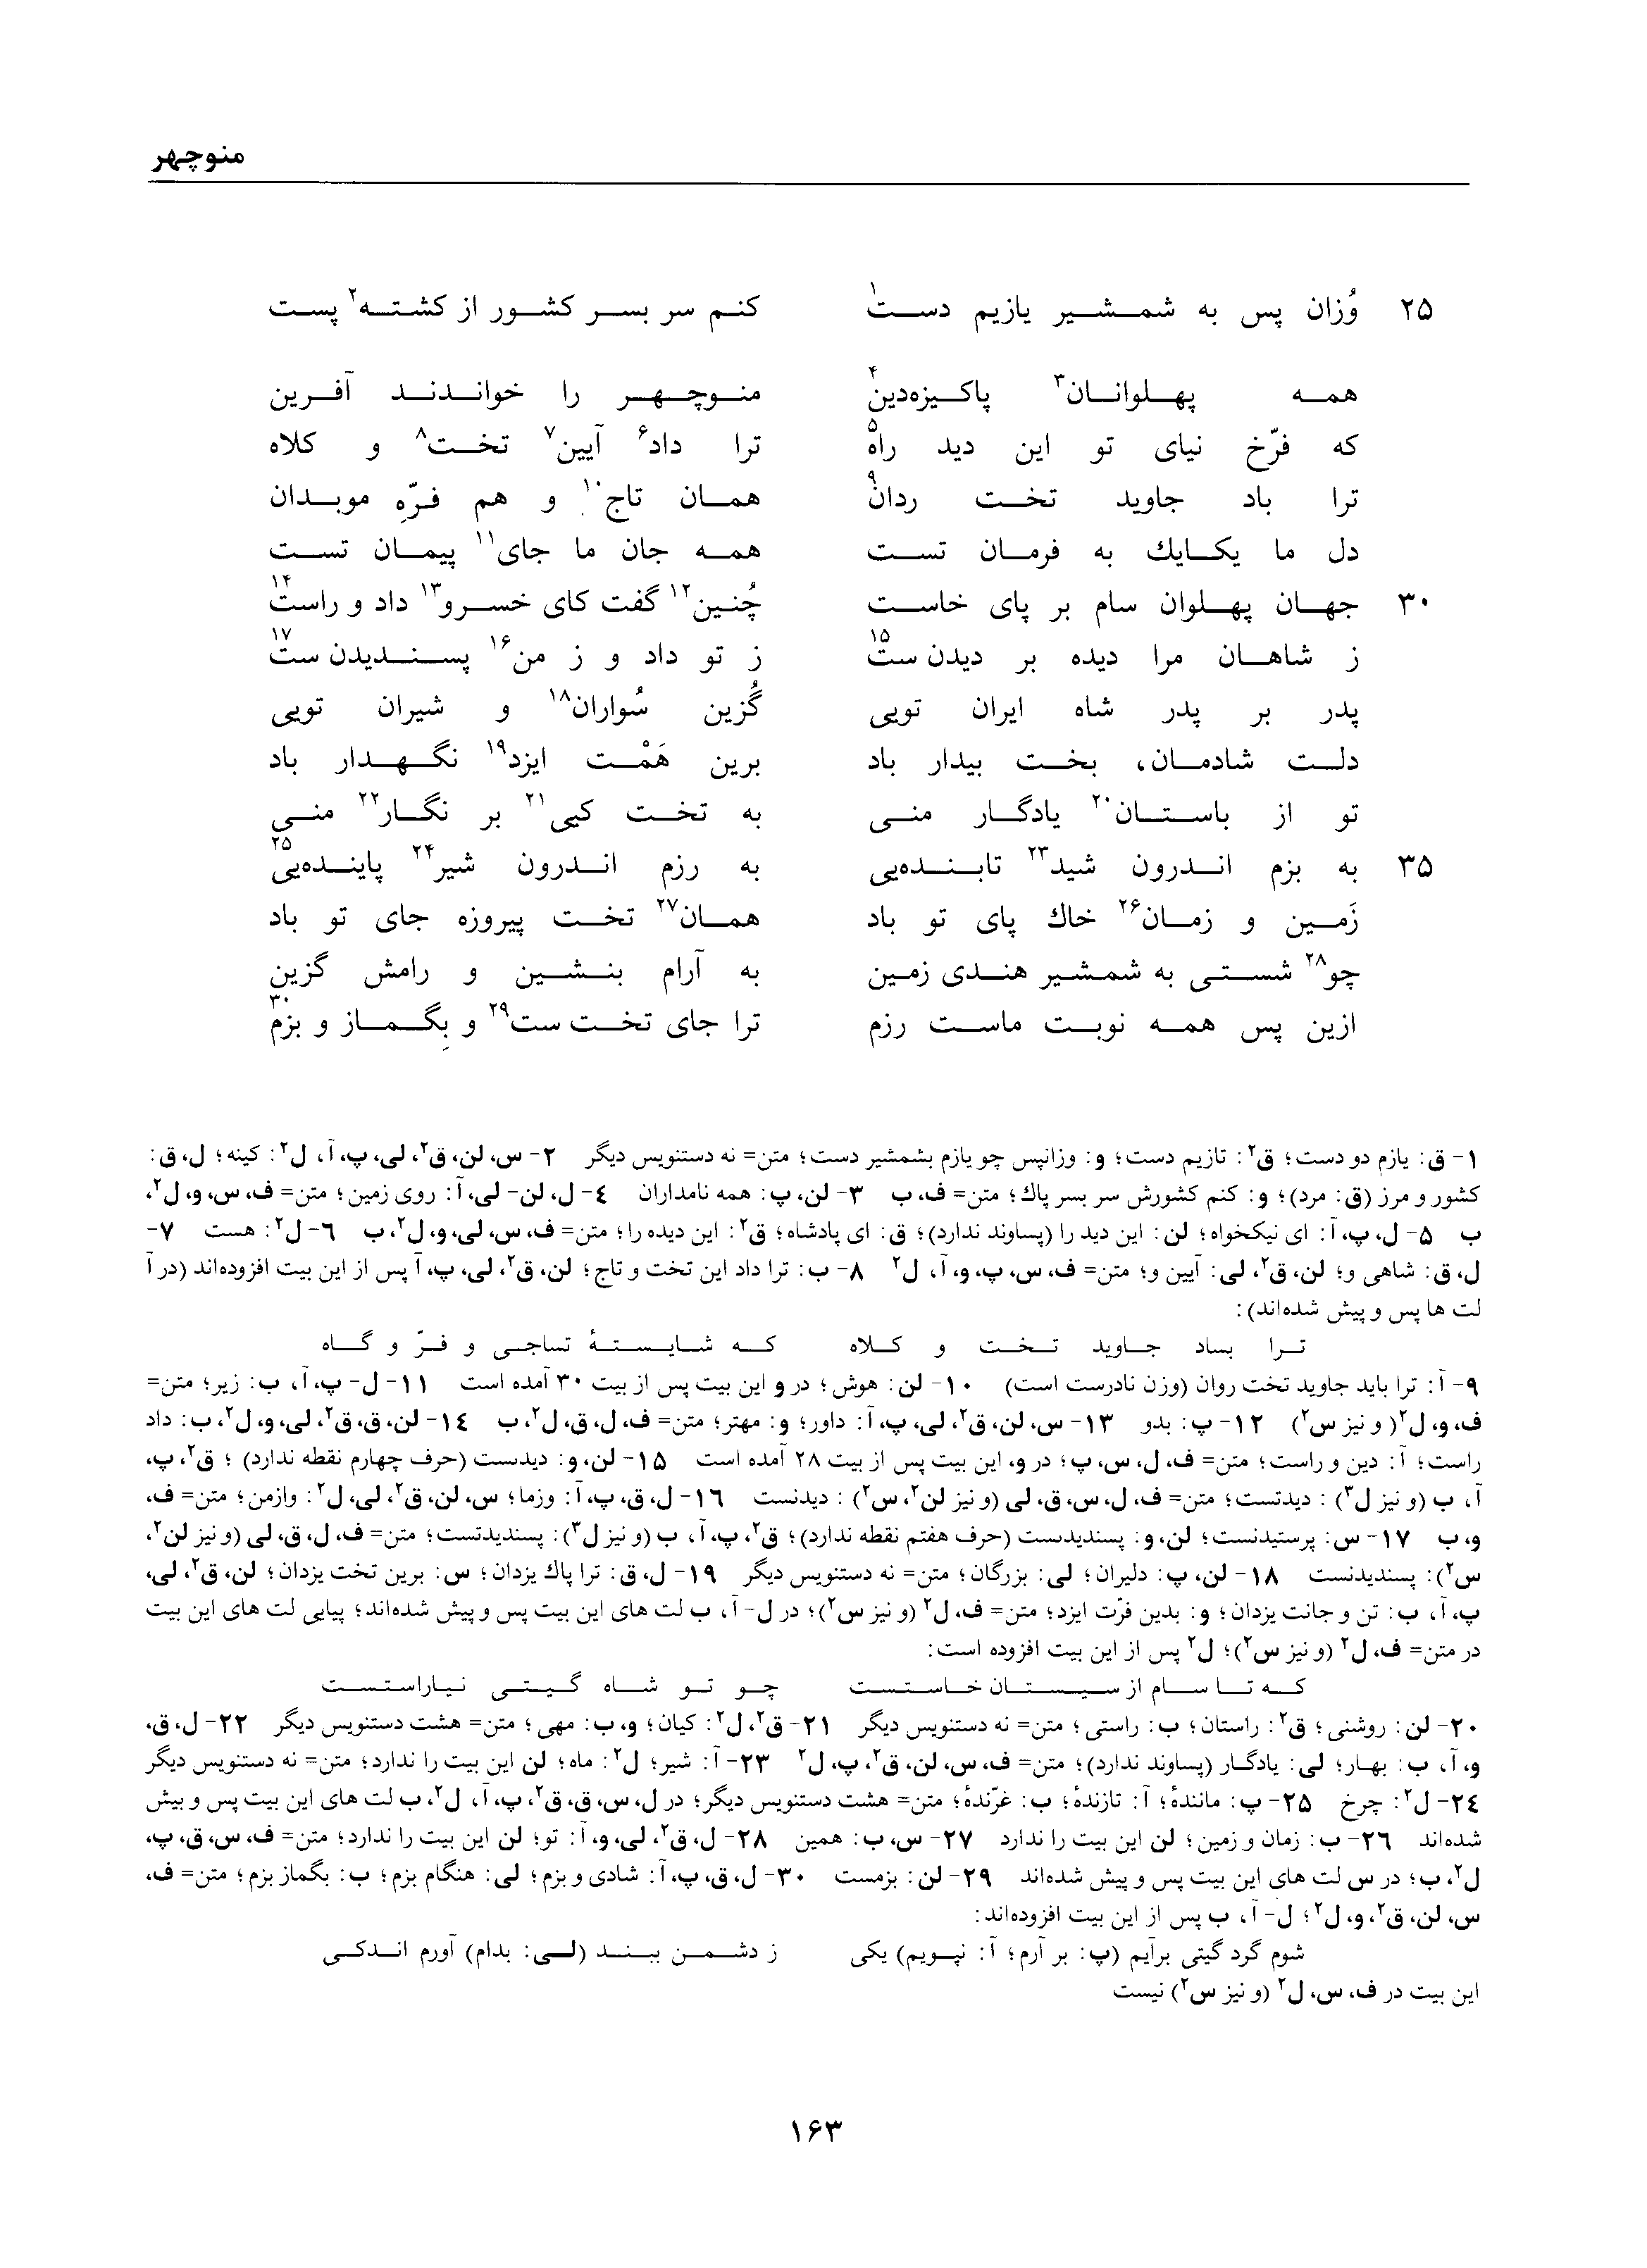 vol. 1, p. 163